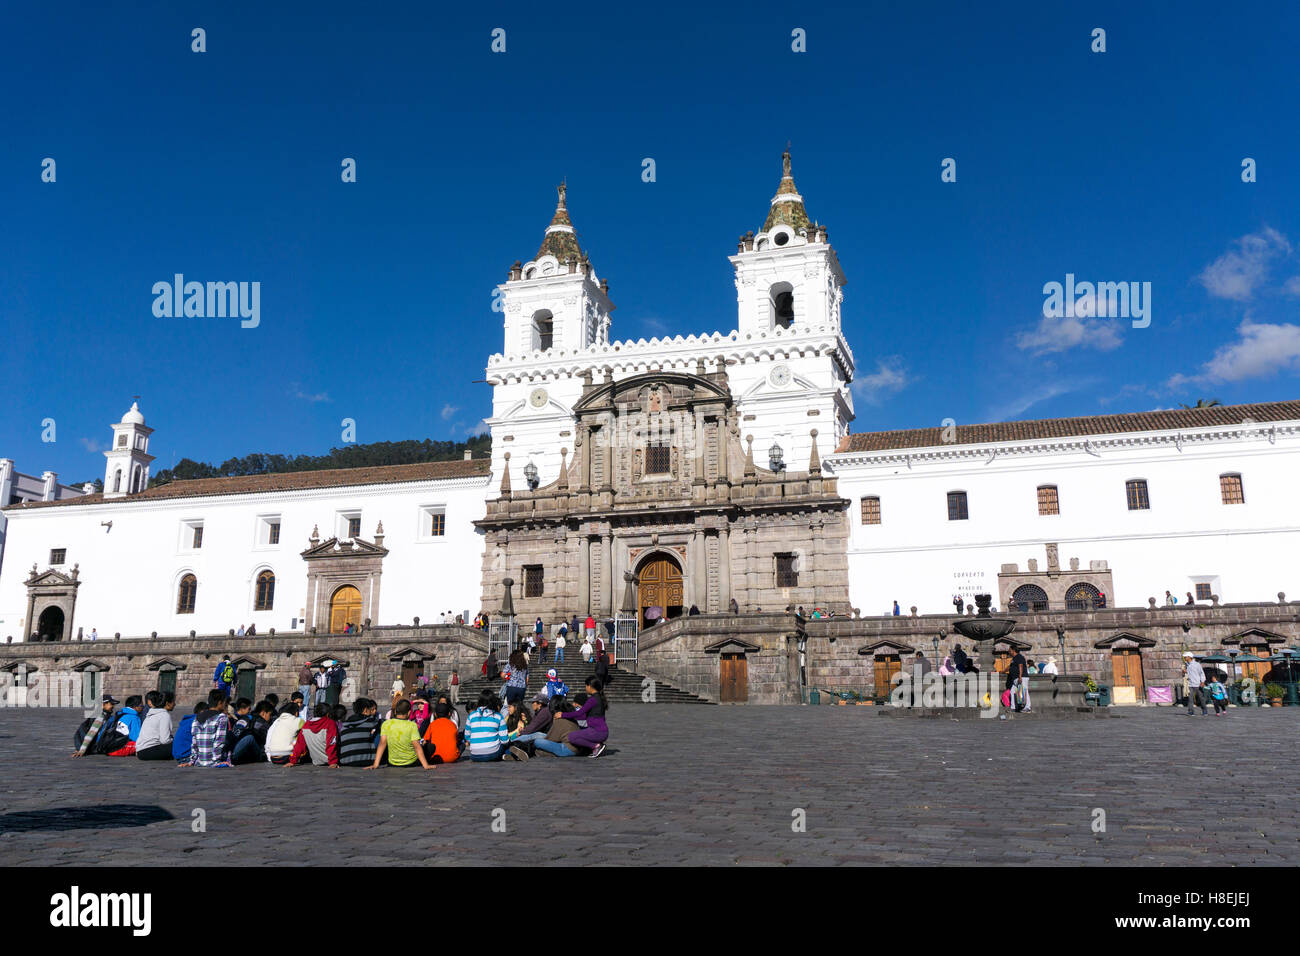 La Plaza San Francisco, Quito, UNESCO World Heritage Site, Equateur, Amérique du Sud Banque D'Images